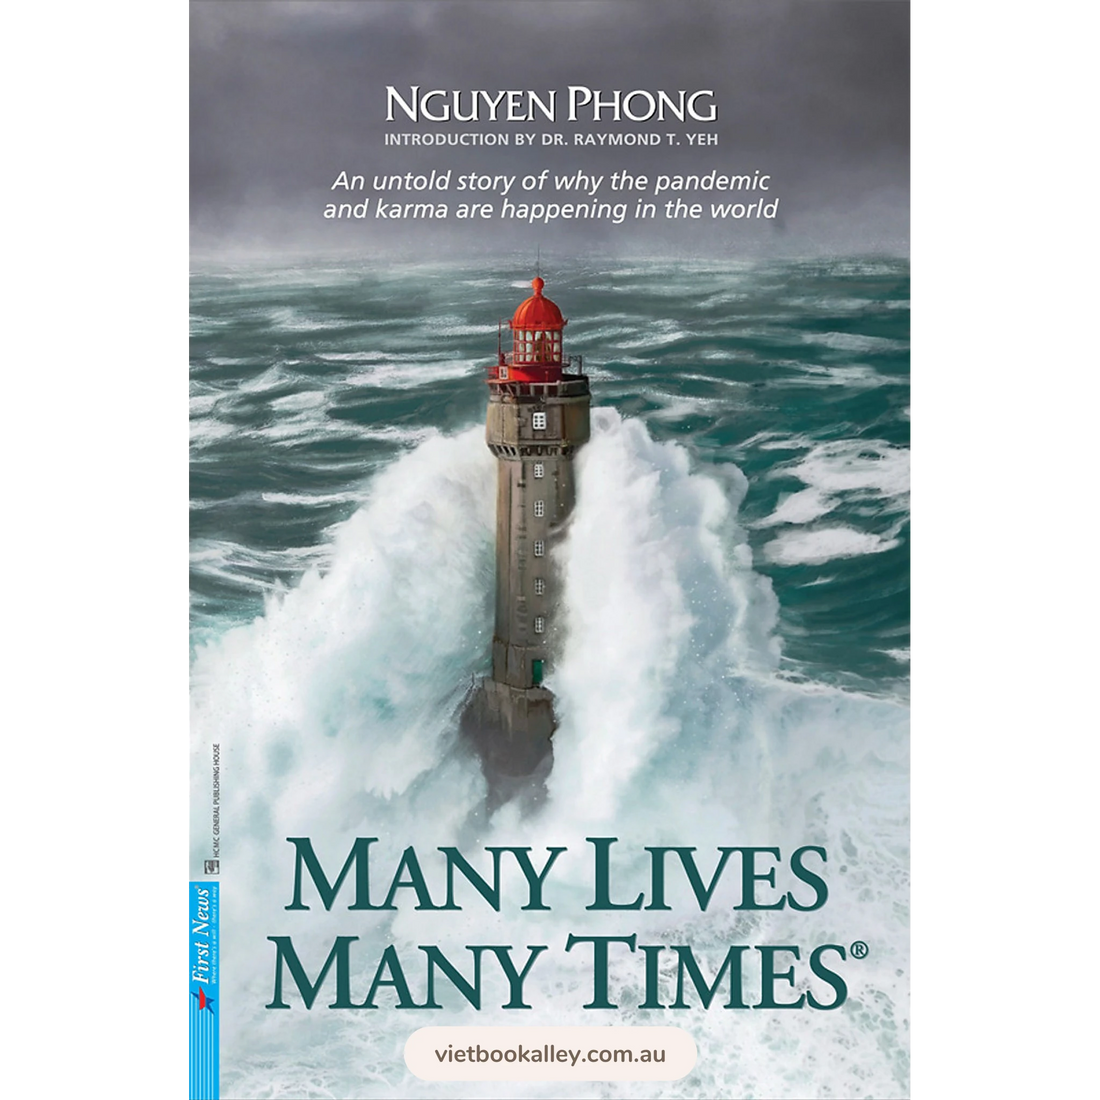 Many Lives Many Times - Vol 1 (Muôn Kiếp Nhân Sinh 1 - English version)